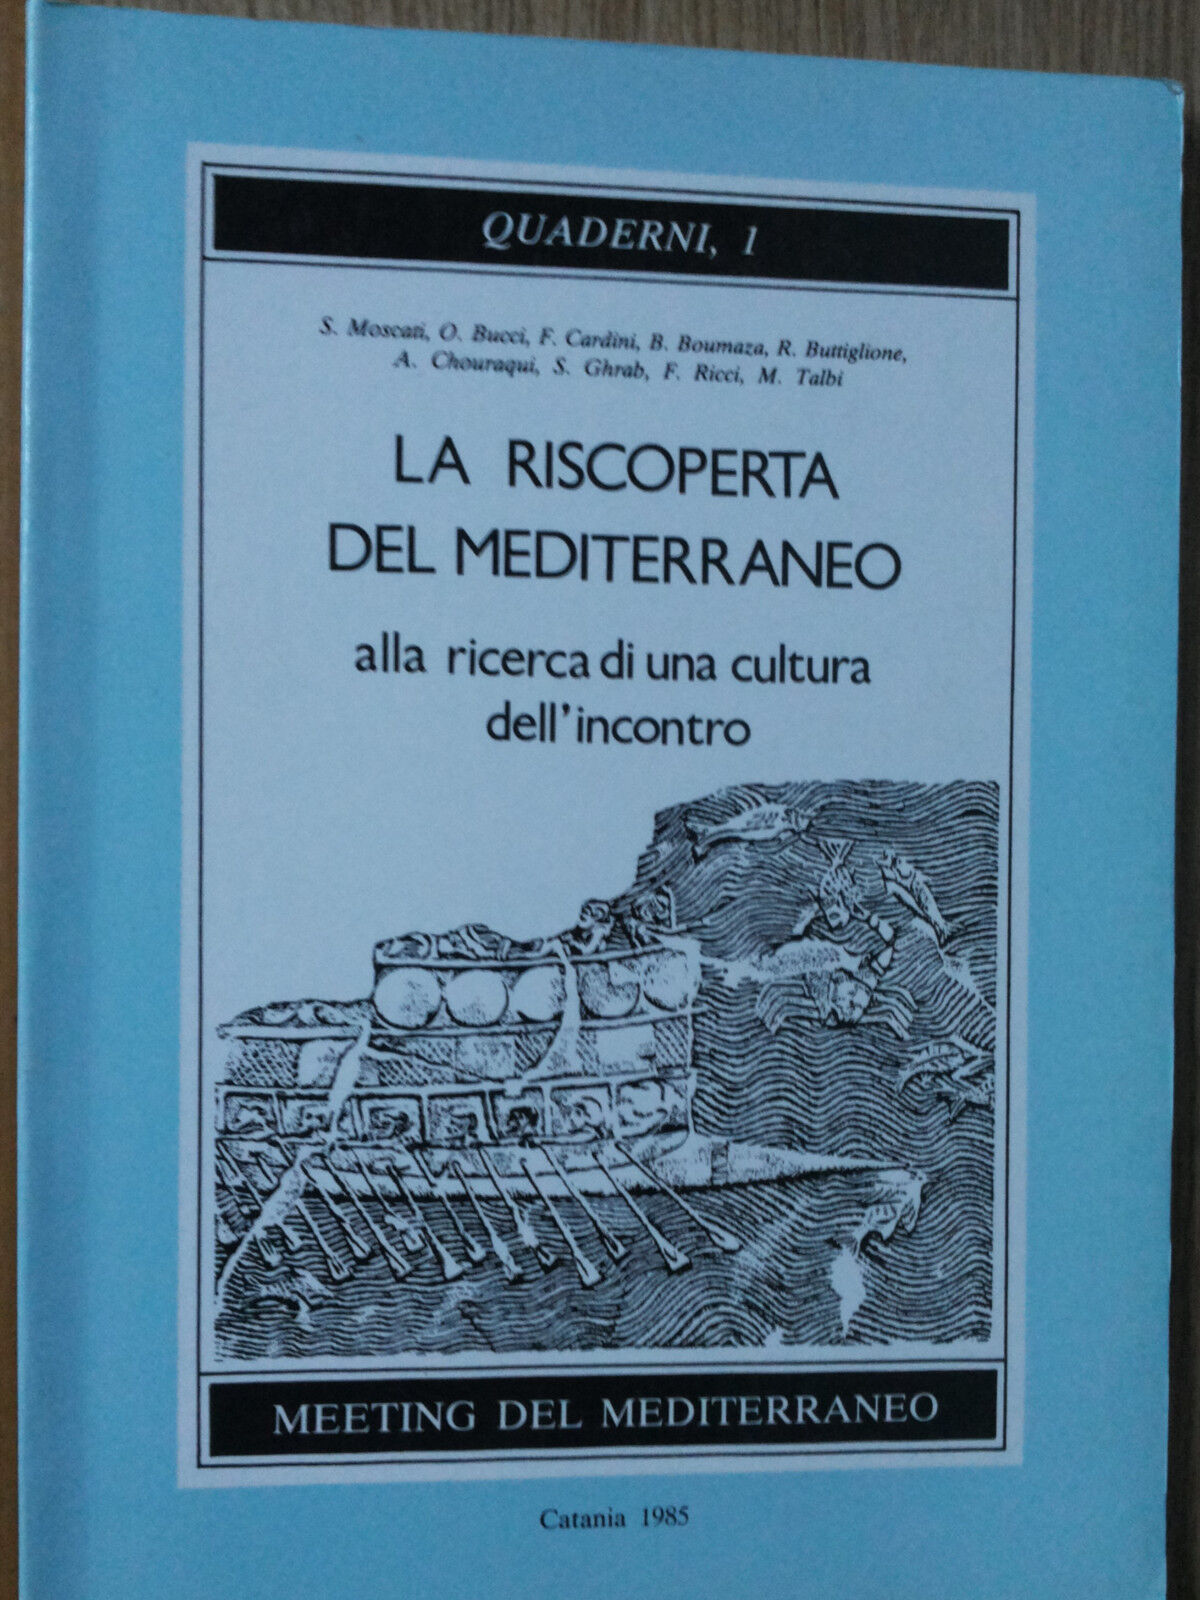 La riscoperta del Mediterraneo - AA.VV. - Meeting del Mediterraneo,1985 - R